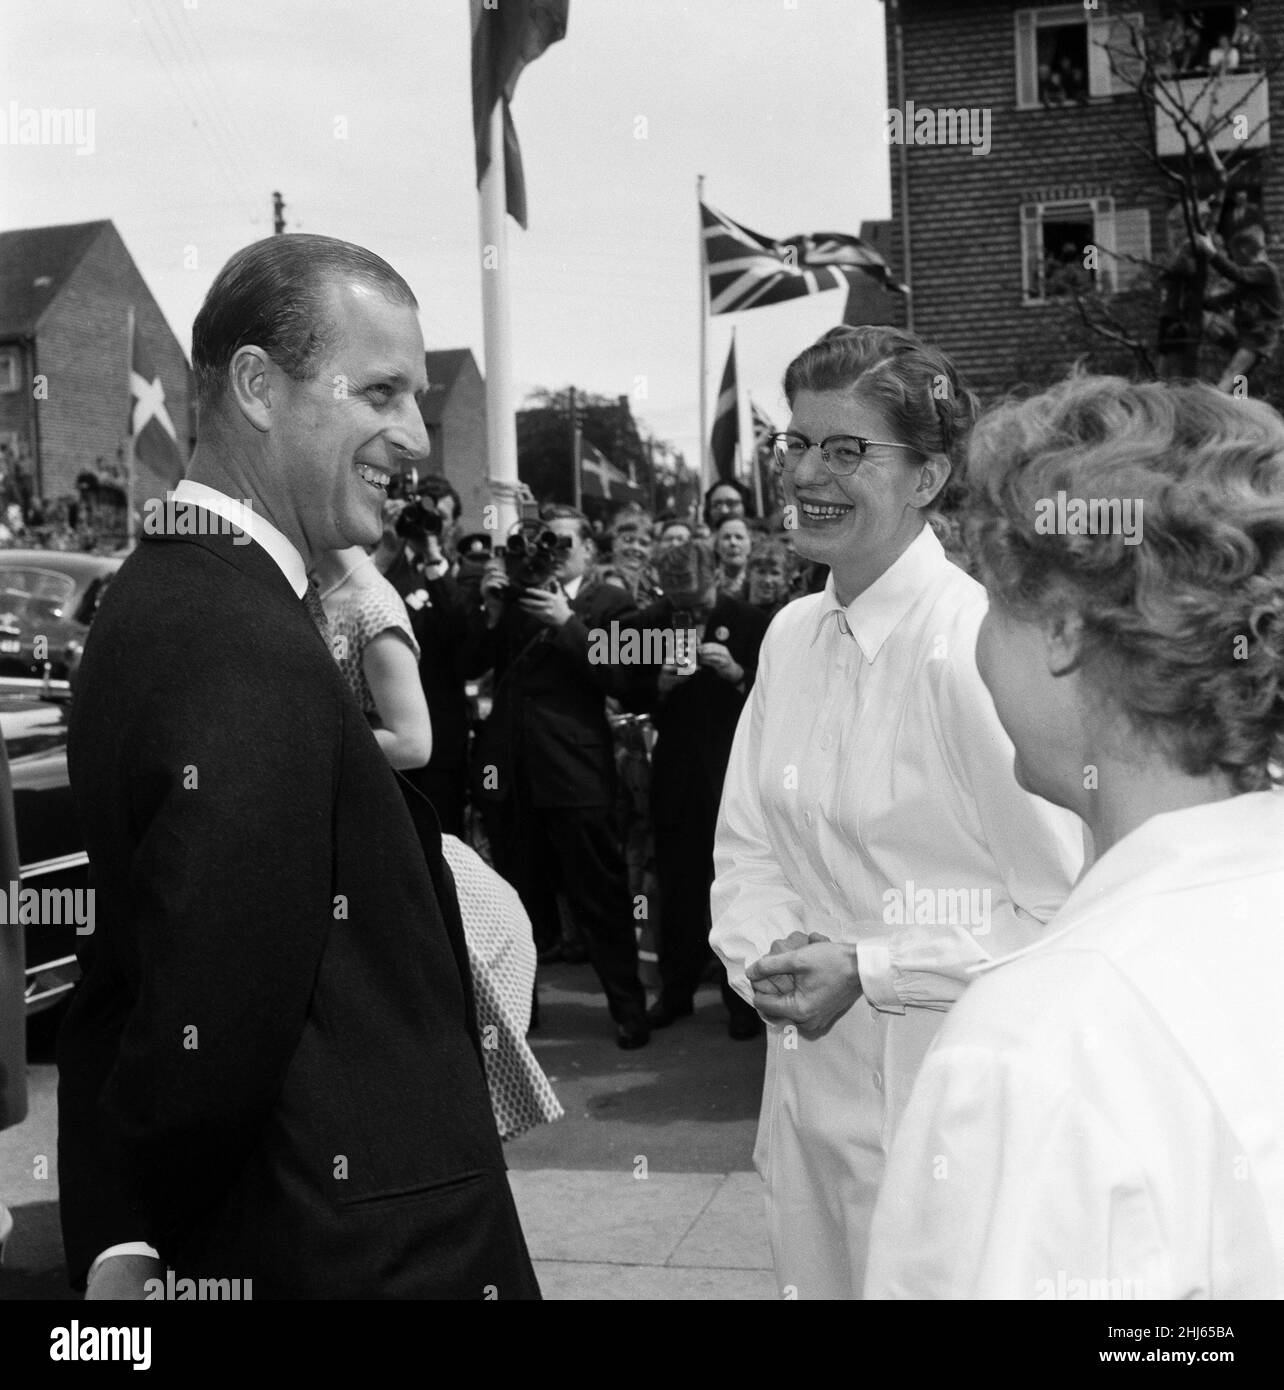 Königin Elizabeth II. Und Prinz Philip, Herzog von Edinburgh, besuchen Dänemark. Prinz Philip spricht mit Arbeitern in einem Erholungszentrum in Kopenhagen. 22nd Mai 1957. Stockfoto